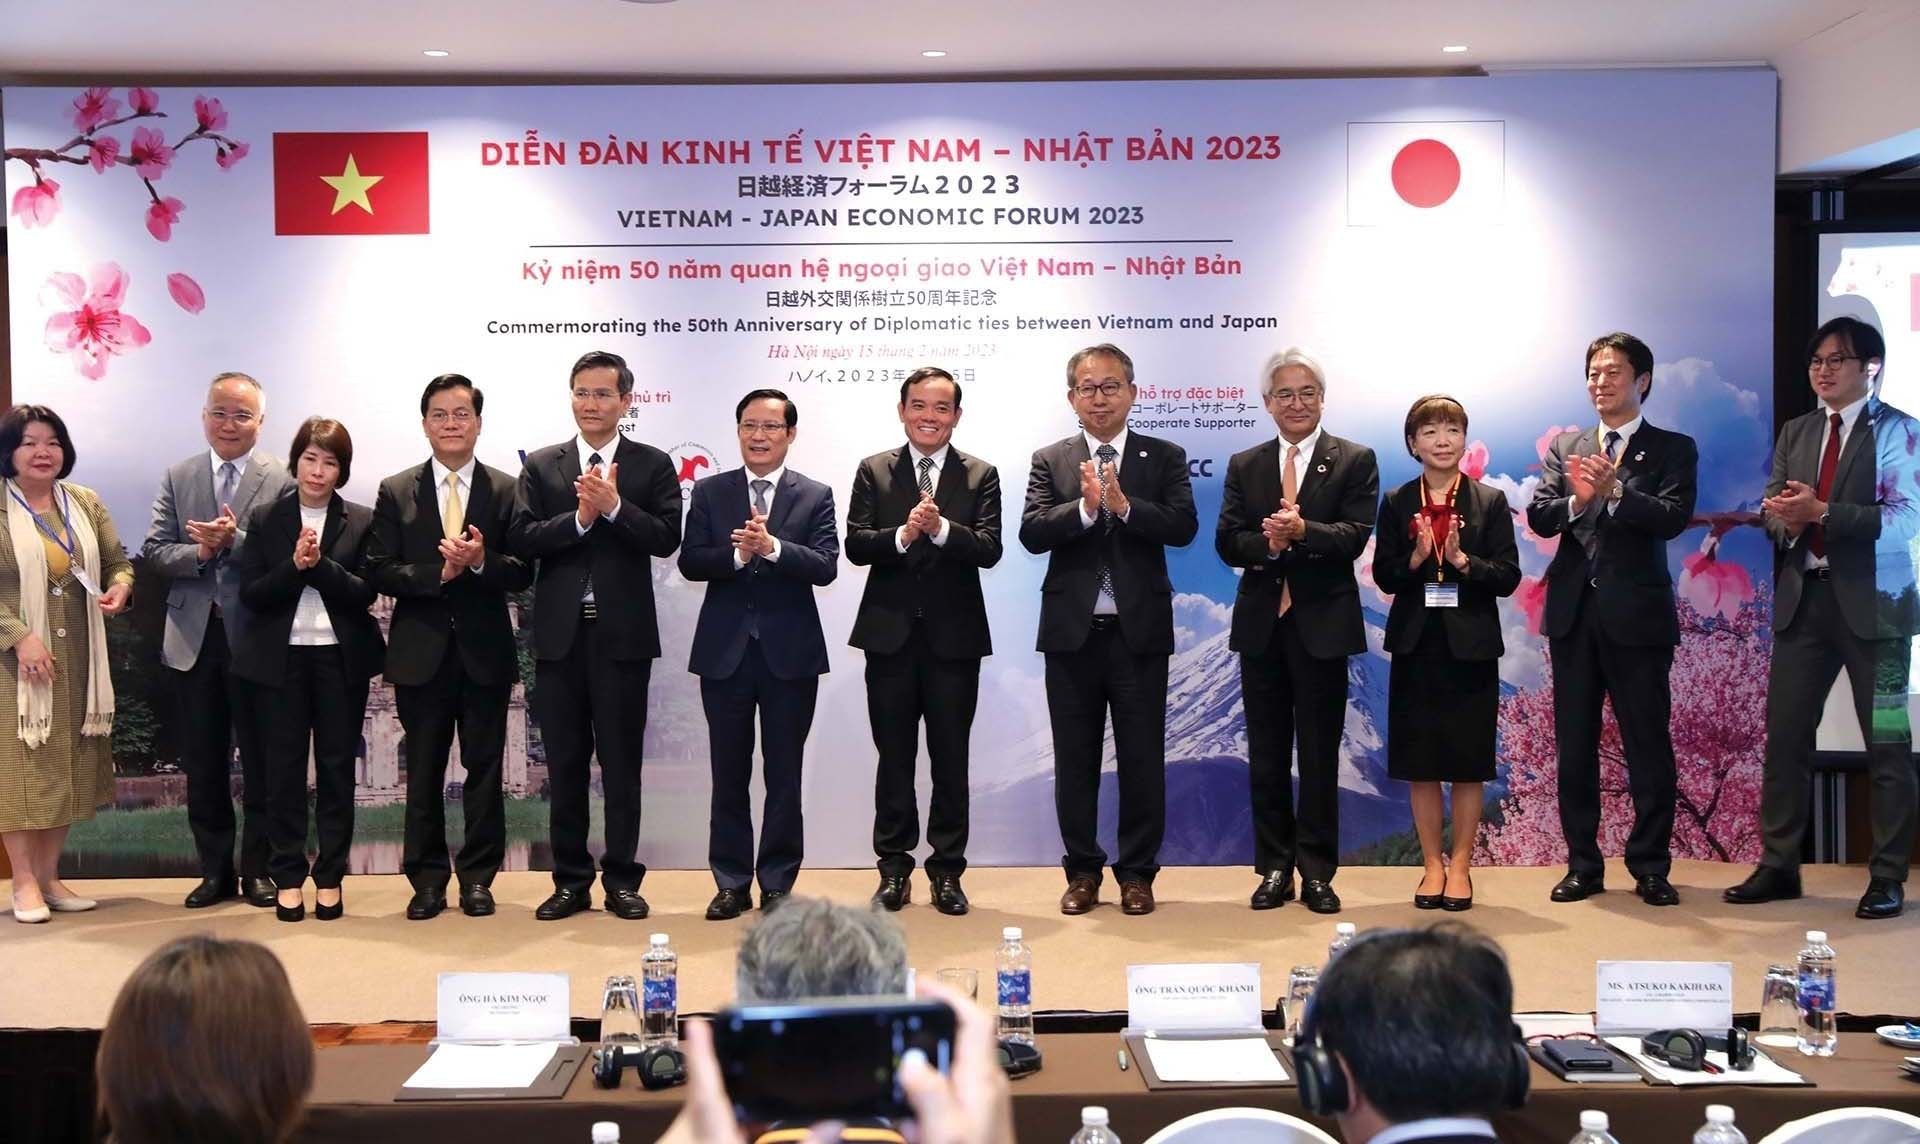 Các đại biểu dự Hội thảo kinh tế cấp cao kỷ niệm 50 năm quan hệ ngoại giao giữa Việt Nam và Nhật Bản, ngày 7/3.